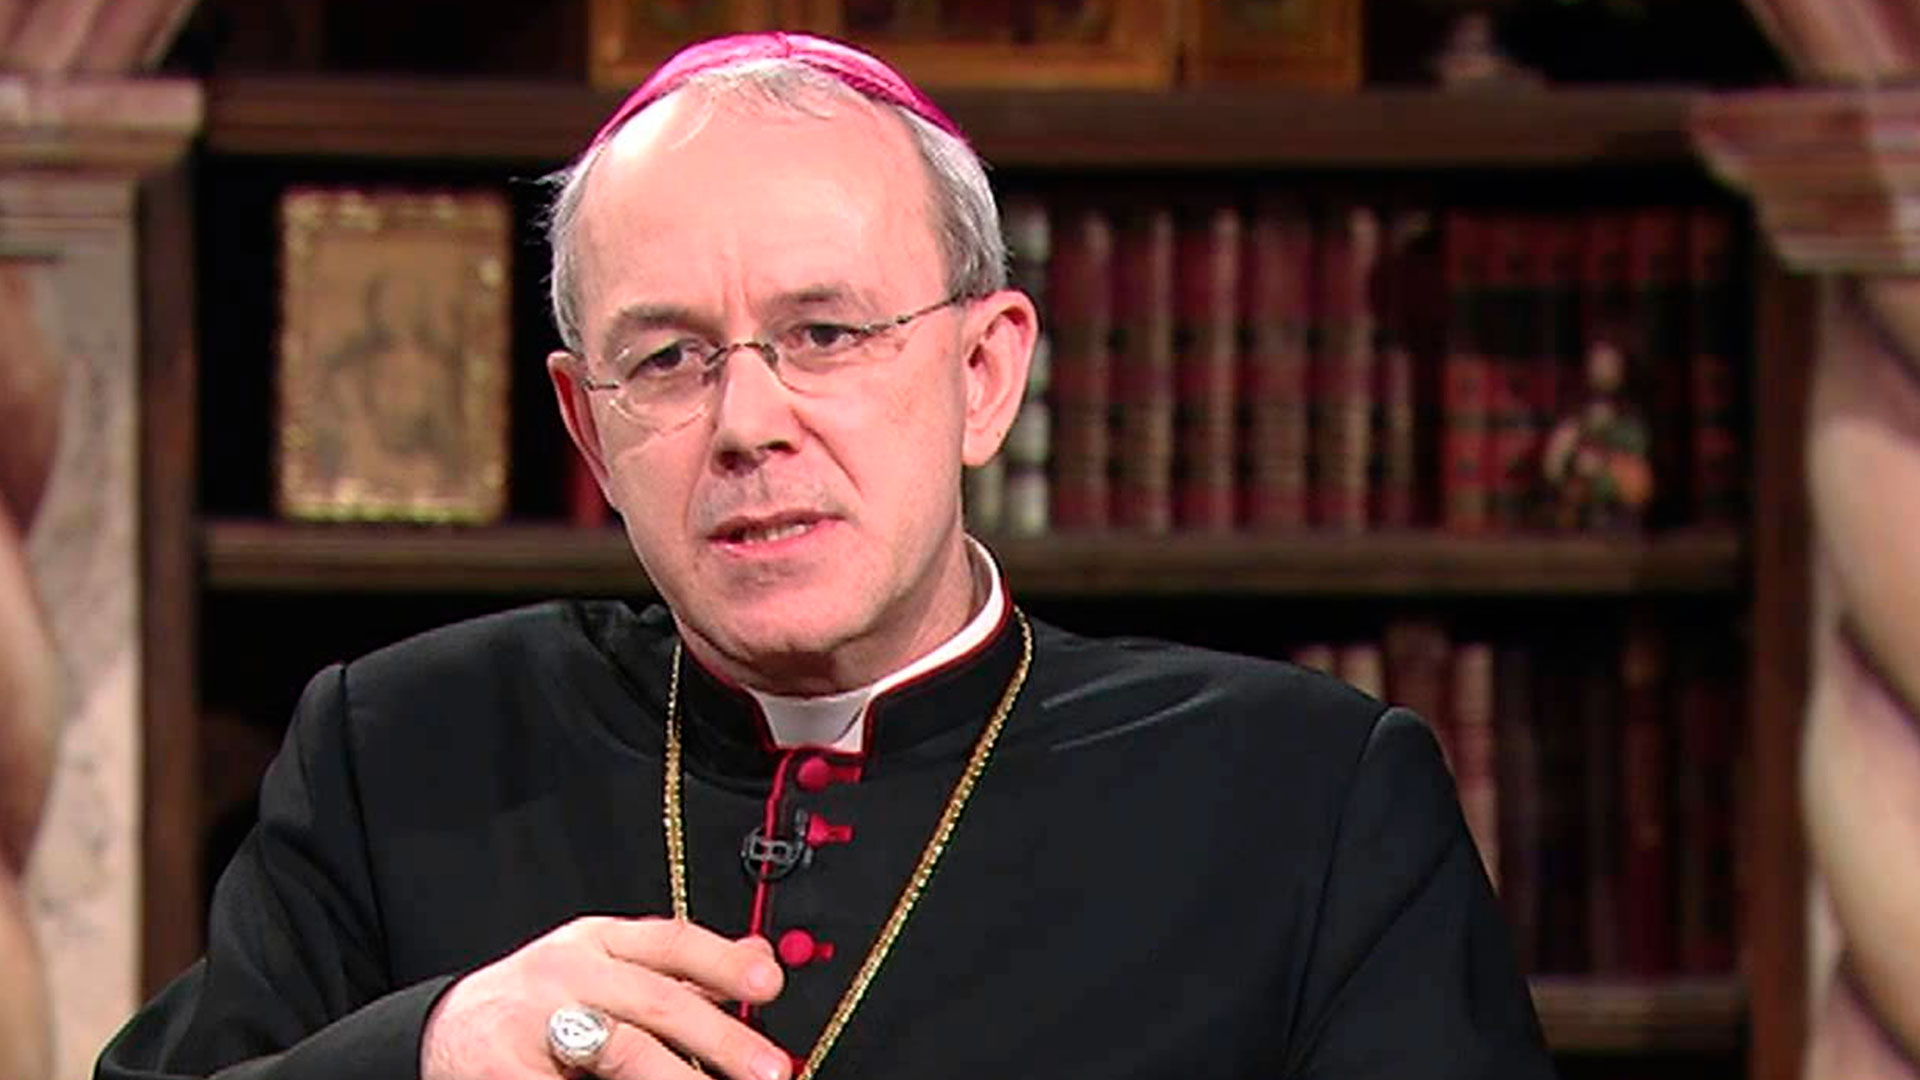 Athenasius Schneider, obispo auxiliar de Astana, es uno de los críticos más destacados de Francisco. (Youtube)